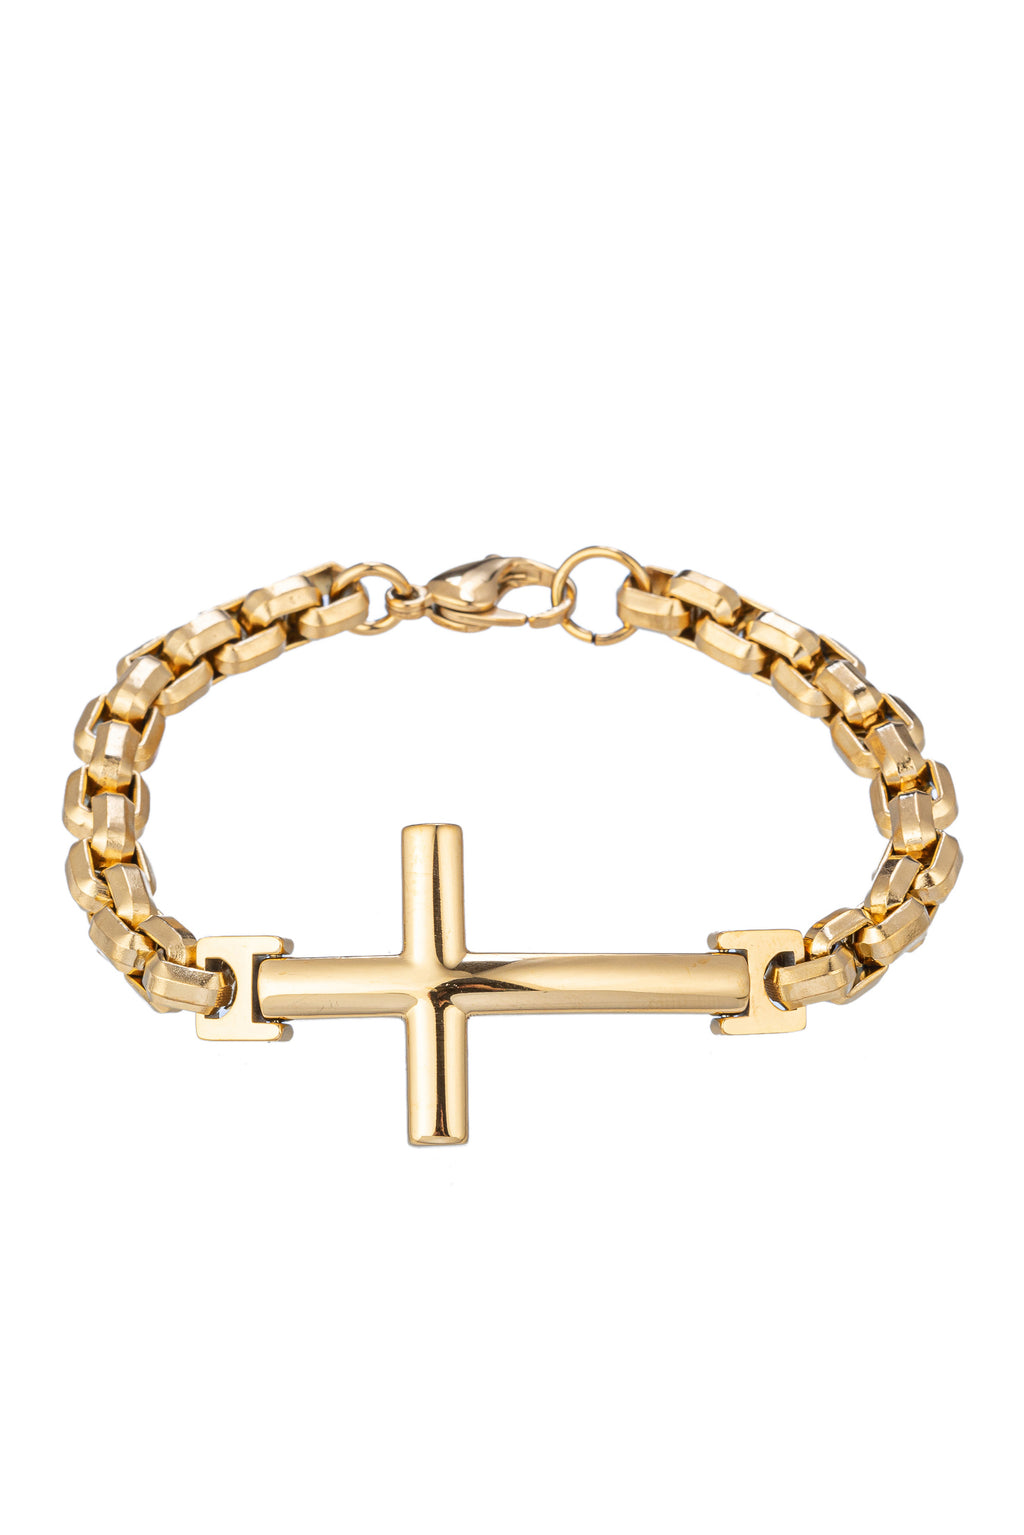 Gold titanium cross pendant chain link bracelet. 